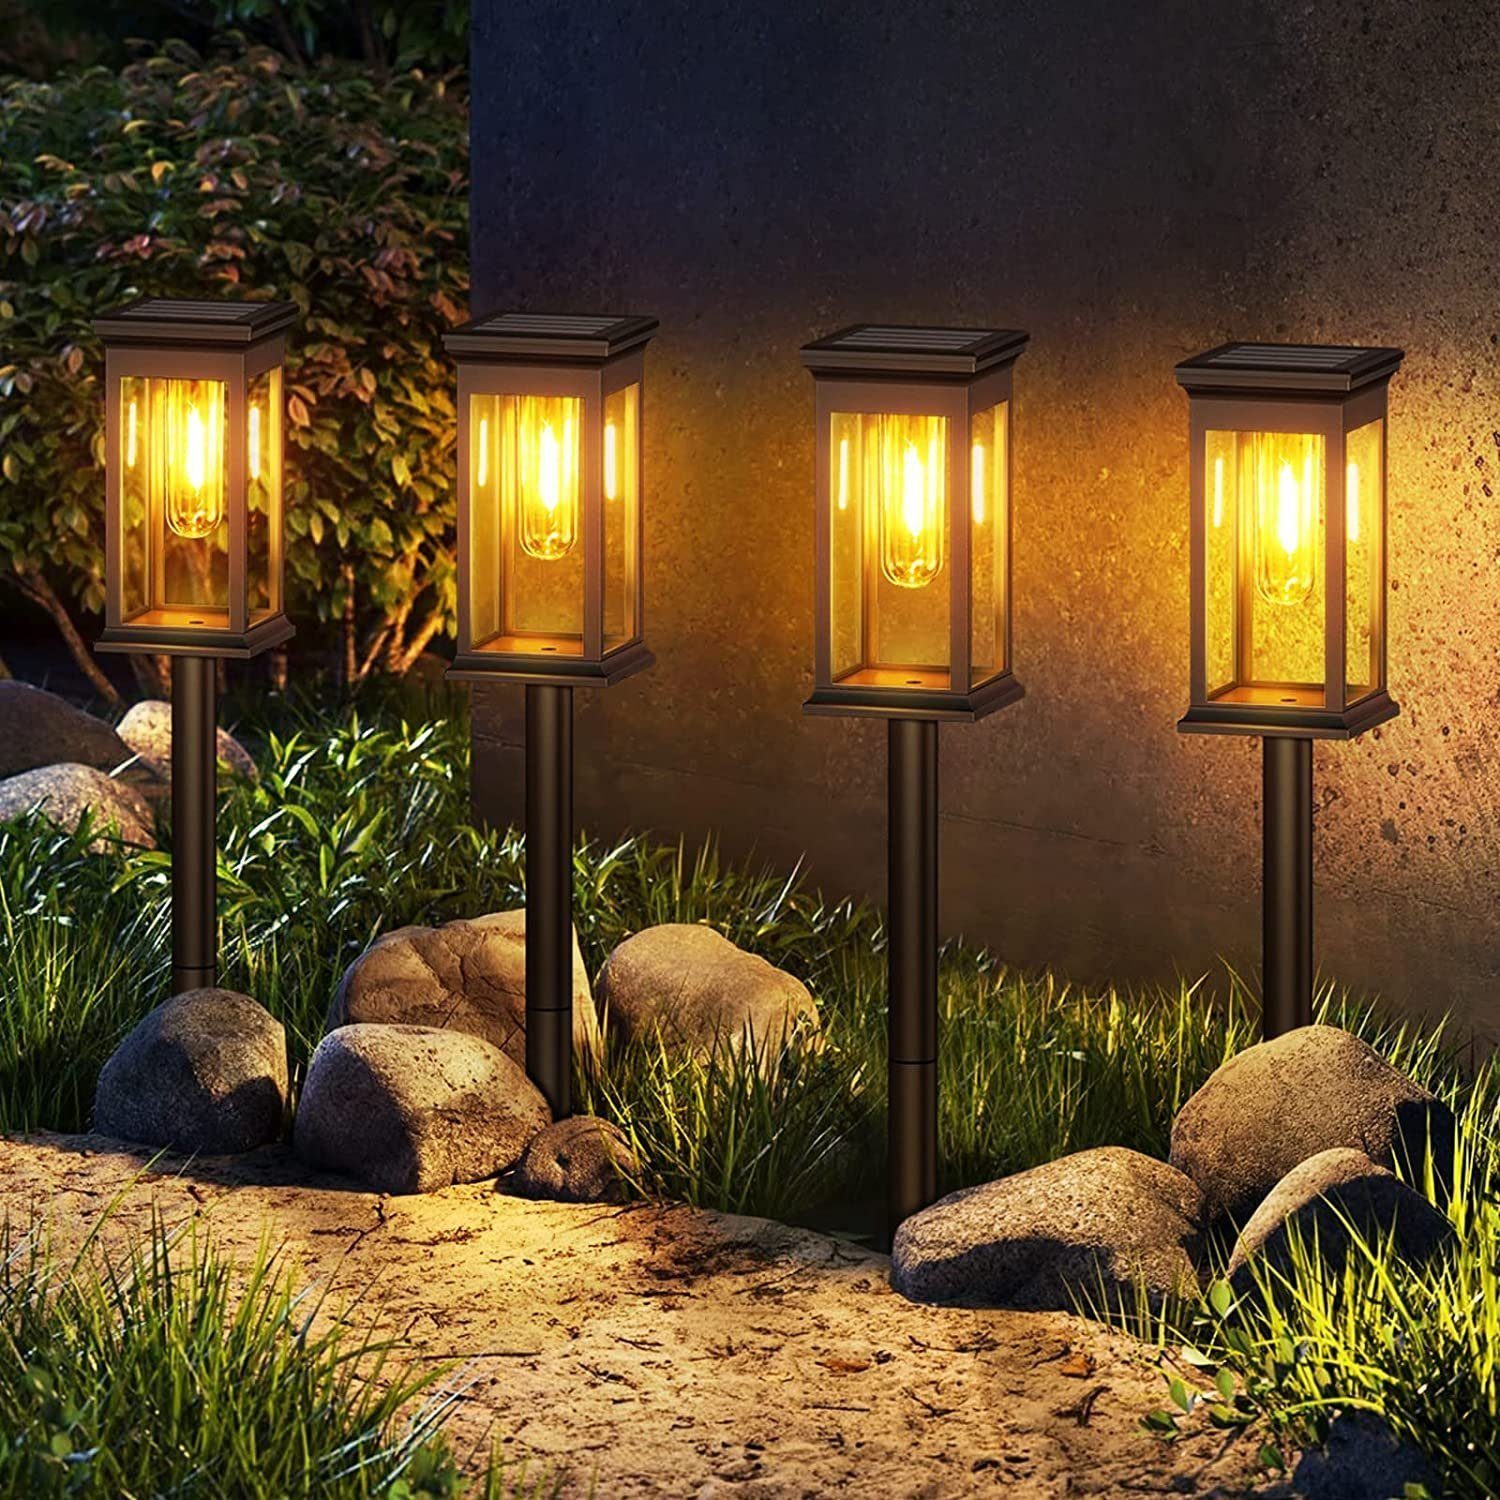 DOPWii Gartenleuchte 6 Stück Solarlampen für Außen Garten,Warmweiß